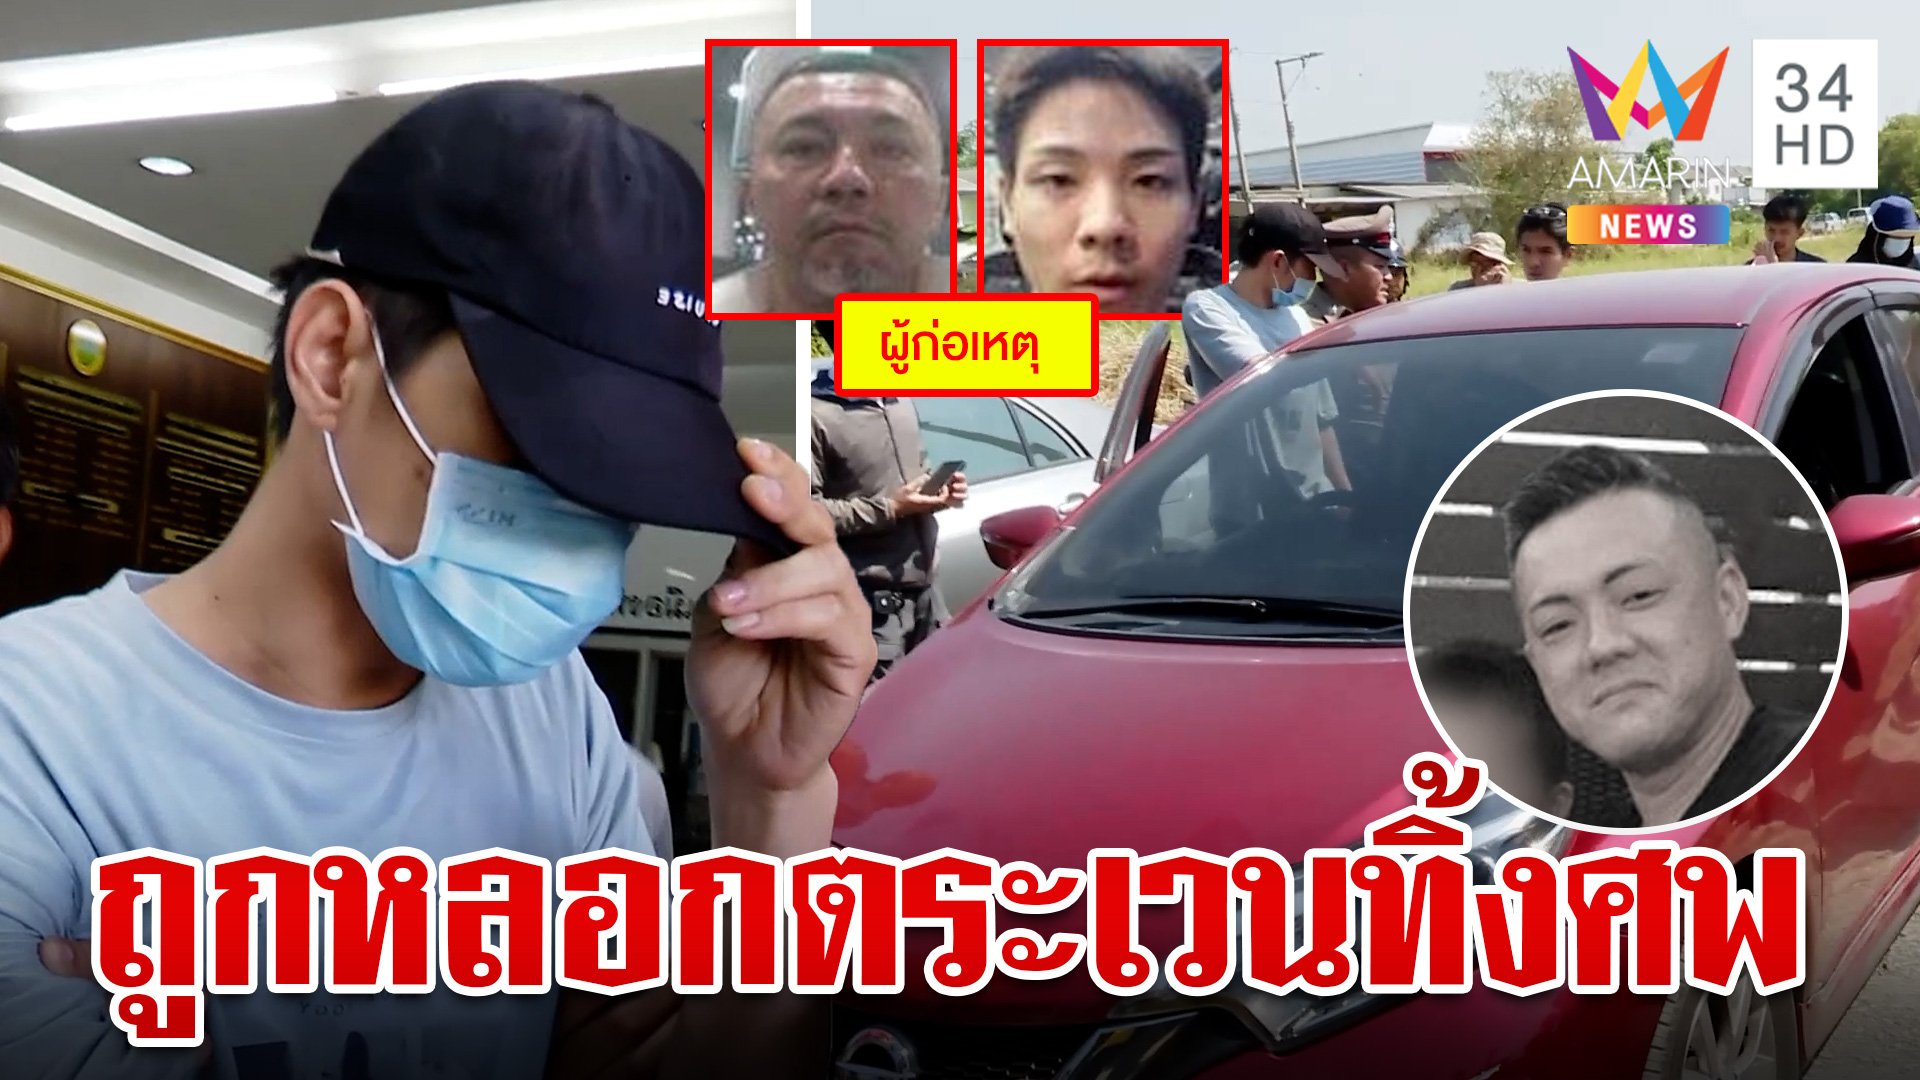 ล็อกคนไทยขับรถให้แก๊งยากูซ่าฆ่าหั่นศพ โวยสื่อฯ ไม่รู้นาทีชำแหละร่าง | ทุบโต๊ะข่าว | 24 เม.ย. 67 | AMARIN TVHD34